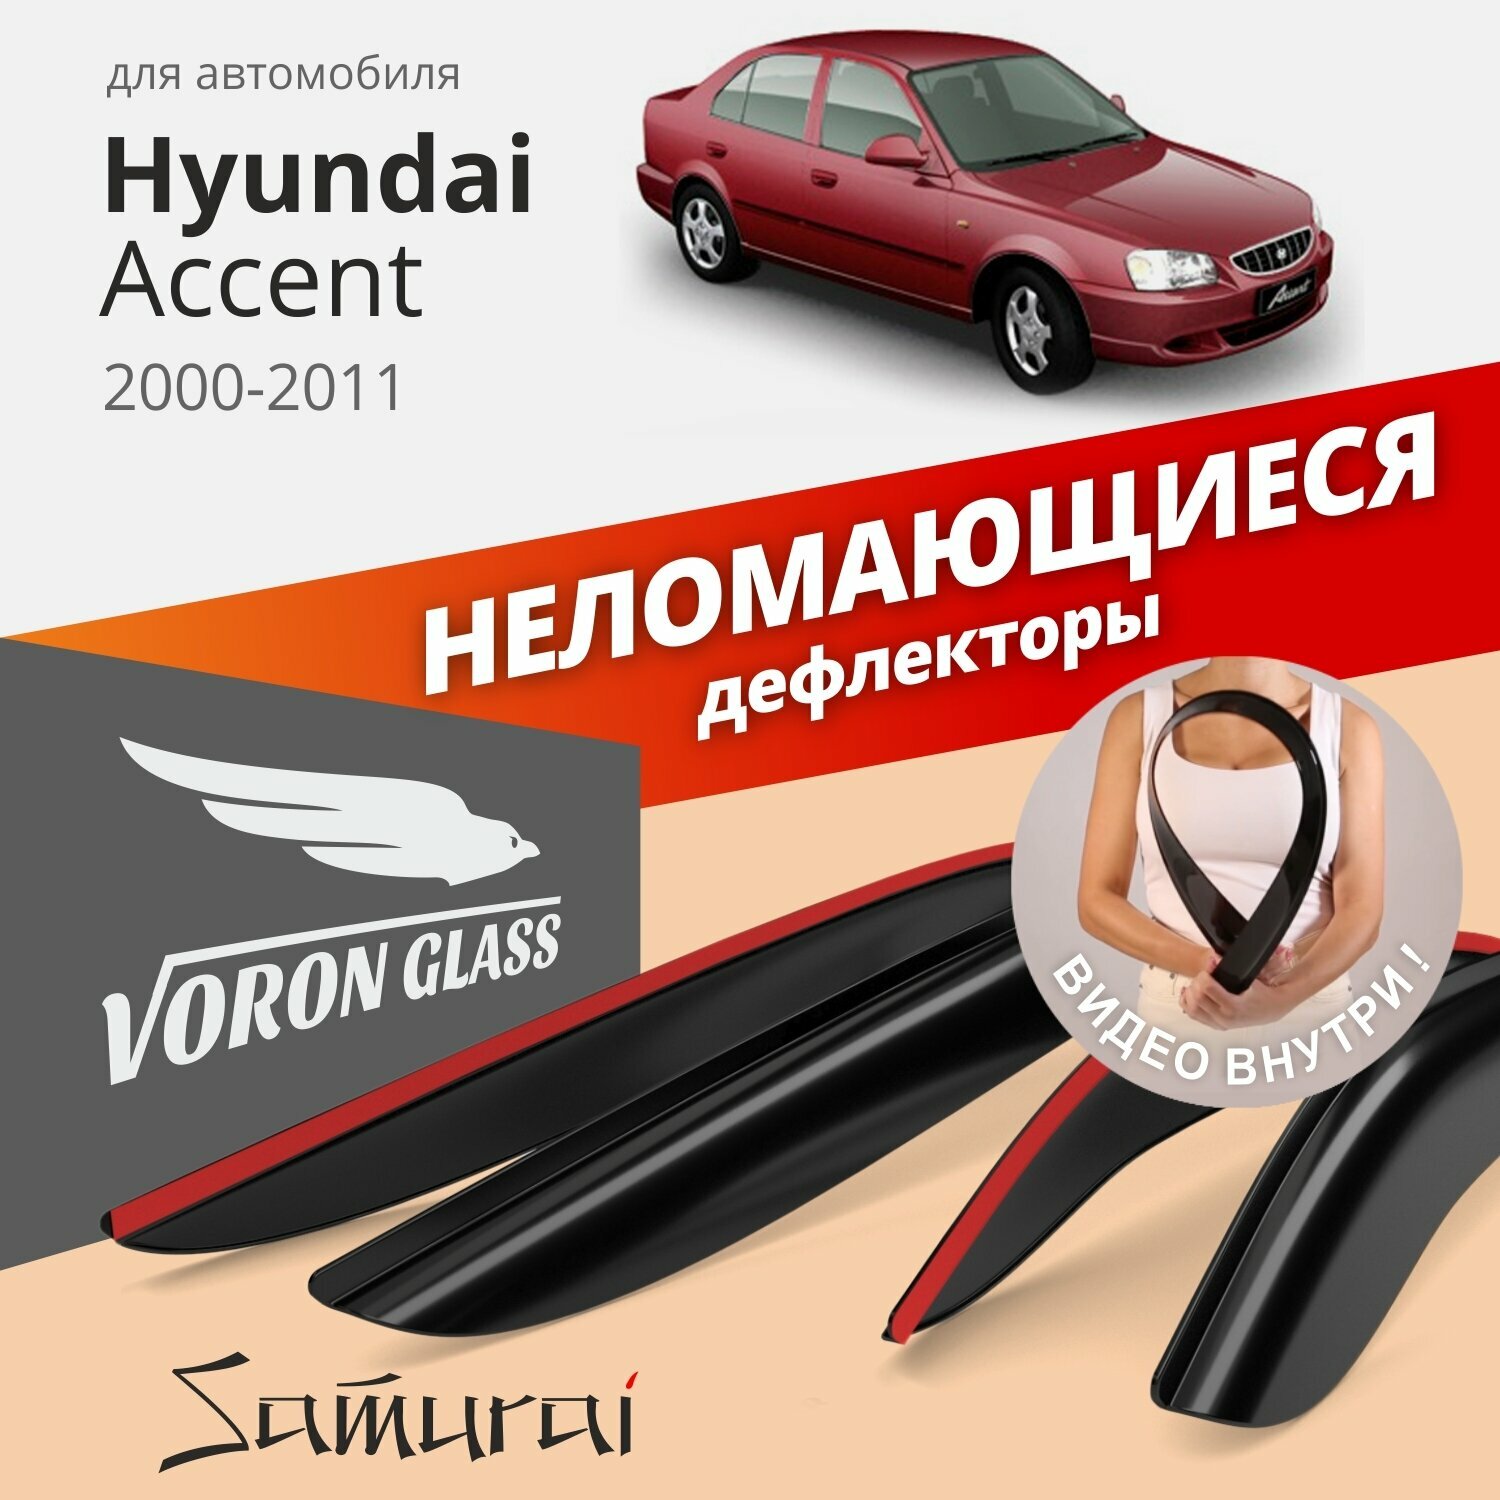 Дефлекторы окон неломающиеся Voron Glass серия Samurai для Hyundai Accent 2000-2011 седан накладные 4 шт.